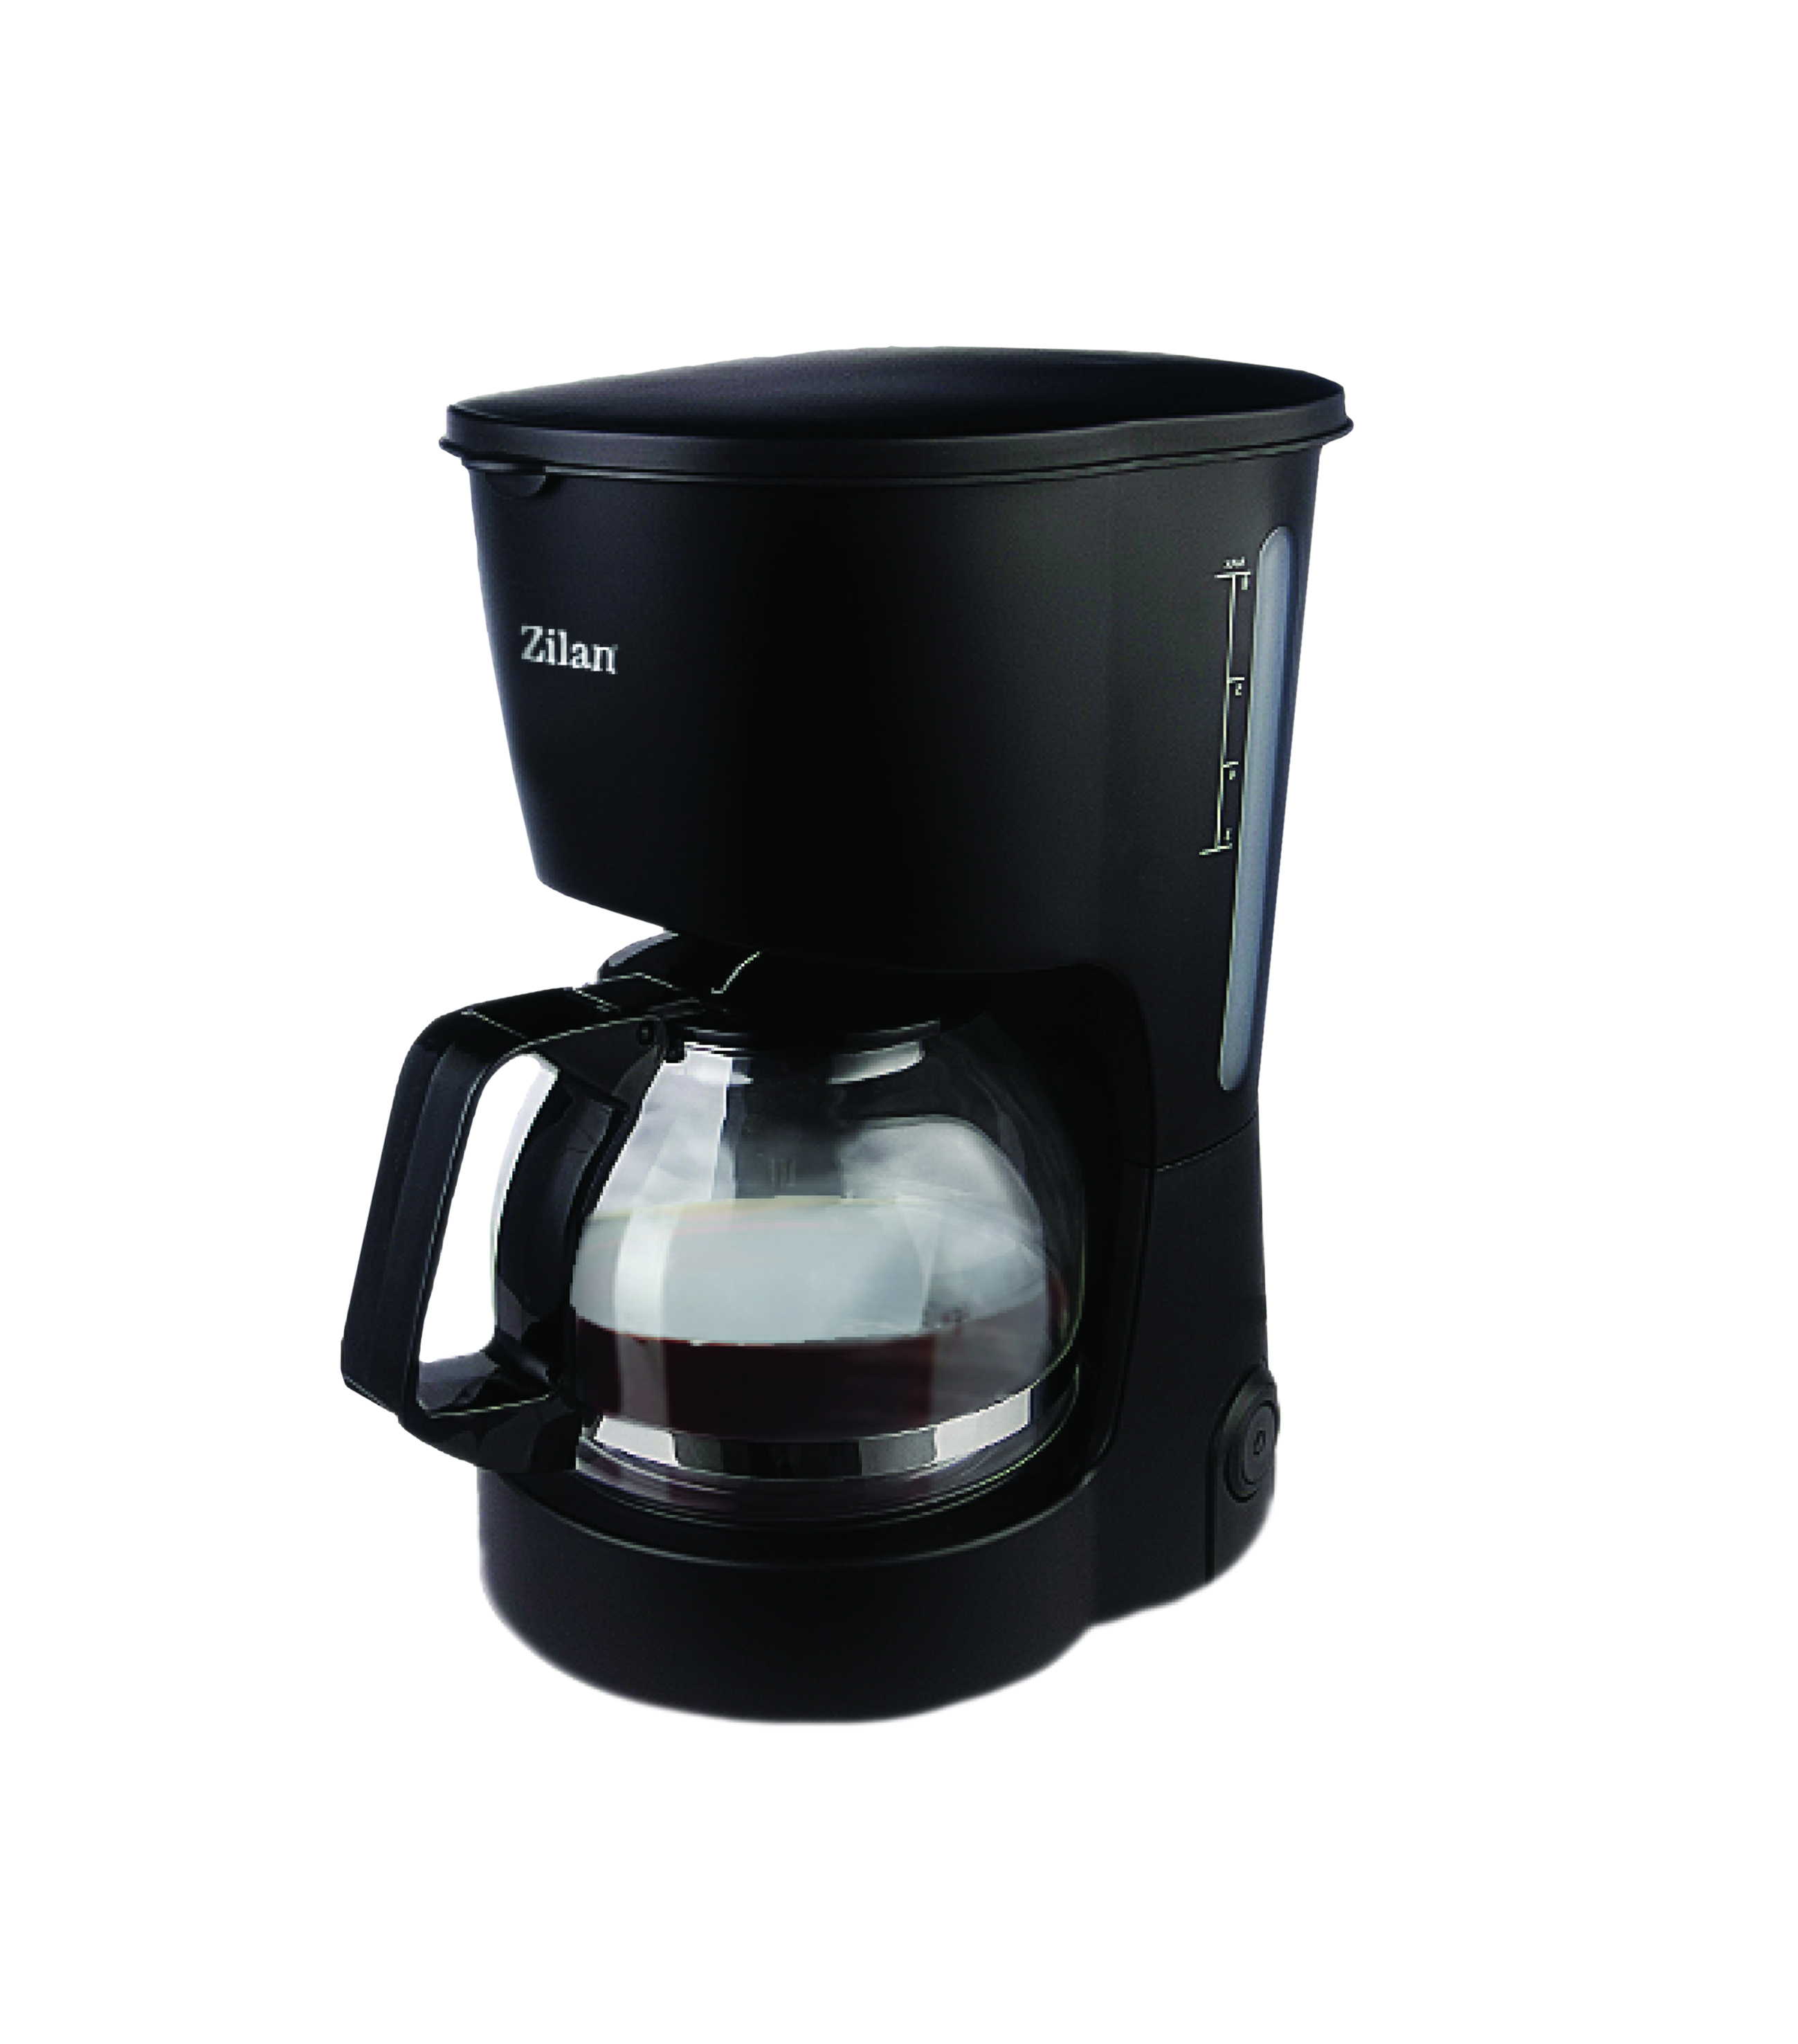 Filtru Cafea Floria ZLN-7887, Putere 600W, Capacitate cana 0.6 L, plita pentru pastrarea calda a cafelei